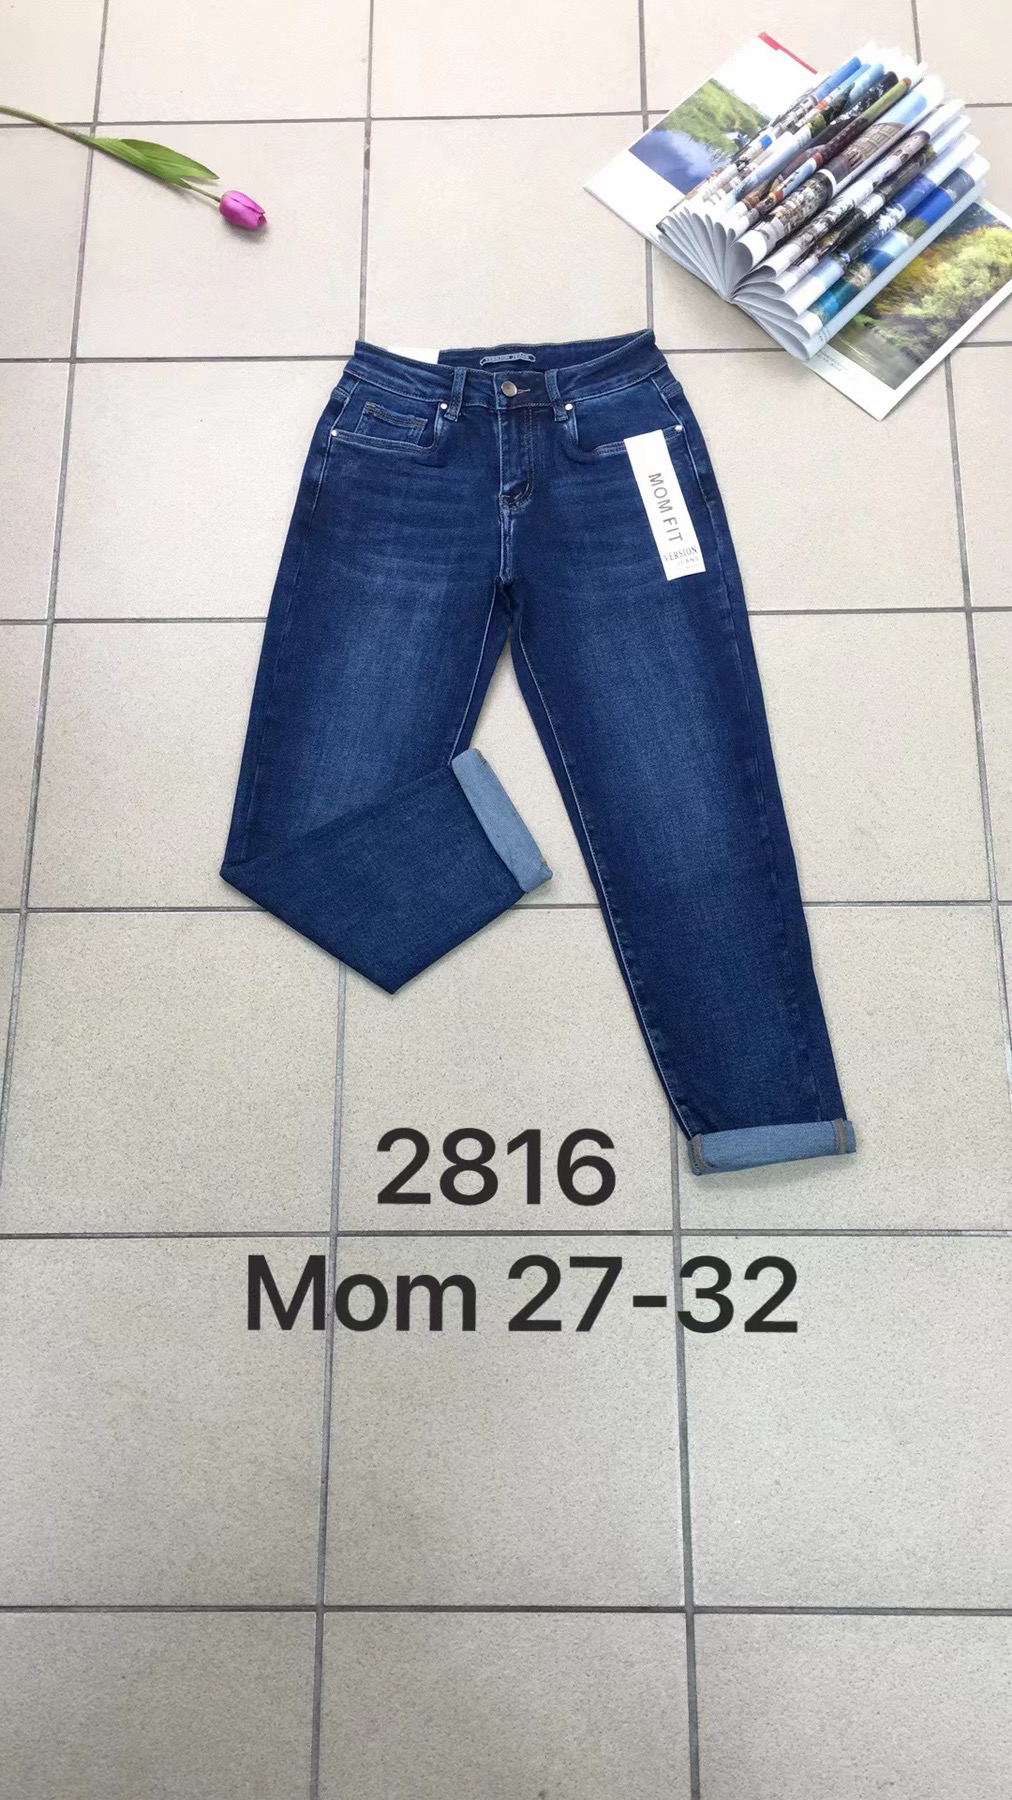 Spodnie damskie jeans Roz  27-32 .  1 kolor . Paczka 10szt